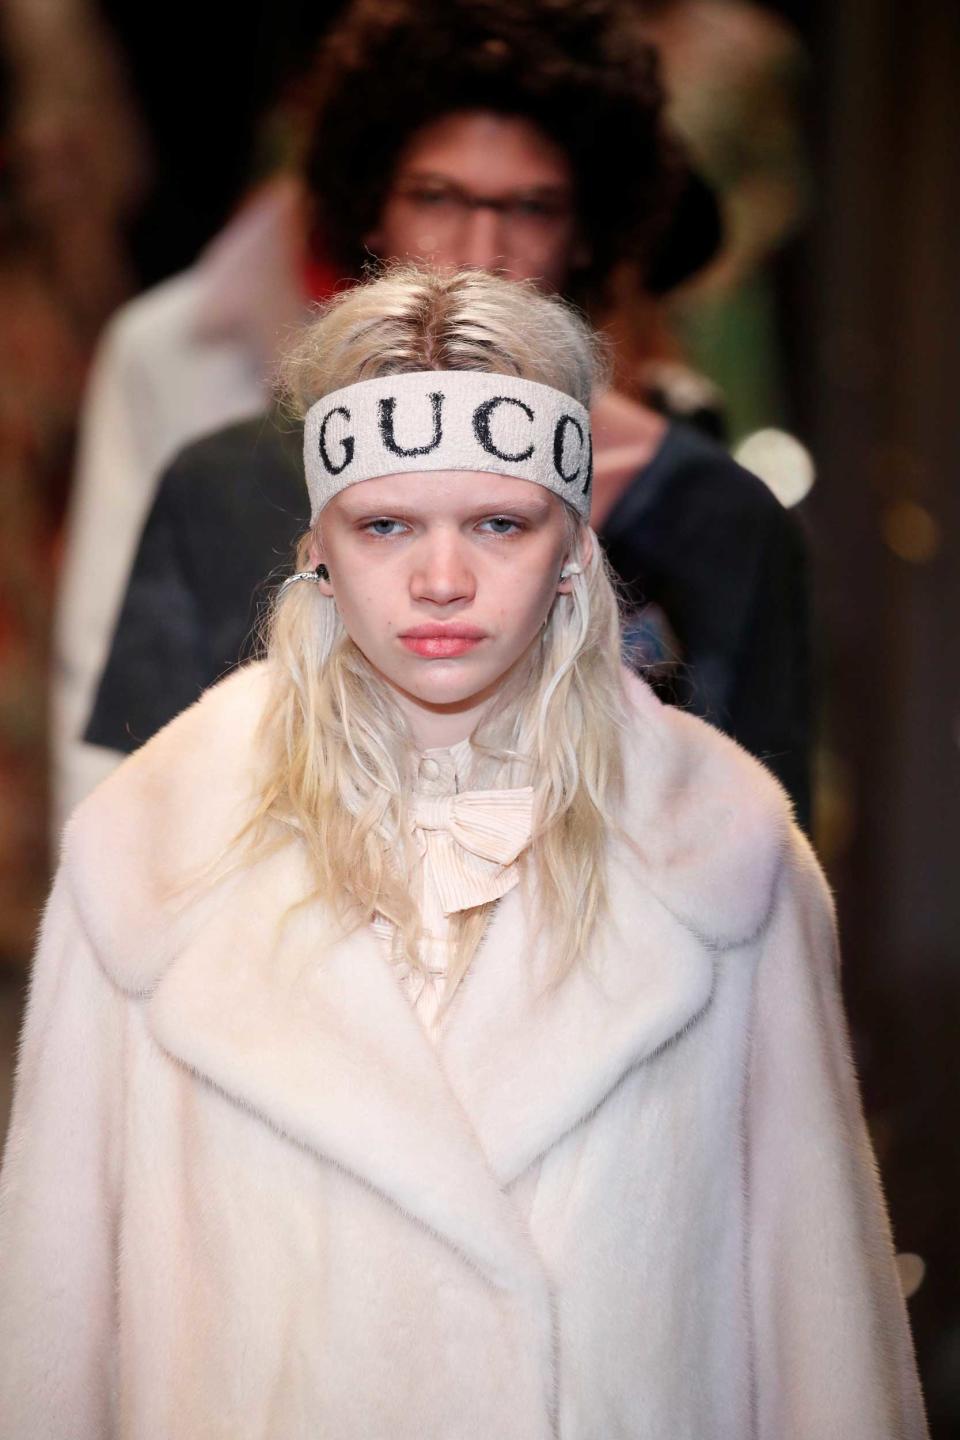 Der Gucci-Schriftzug prangt auffällig auf dem beigefarbenen Stirnband. (Bild: ddp images)